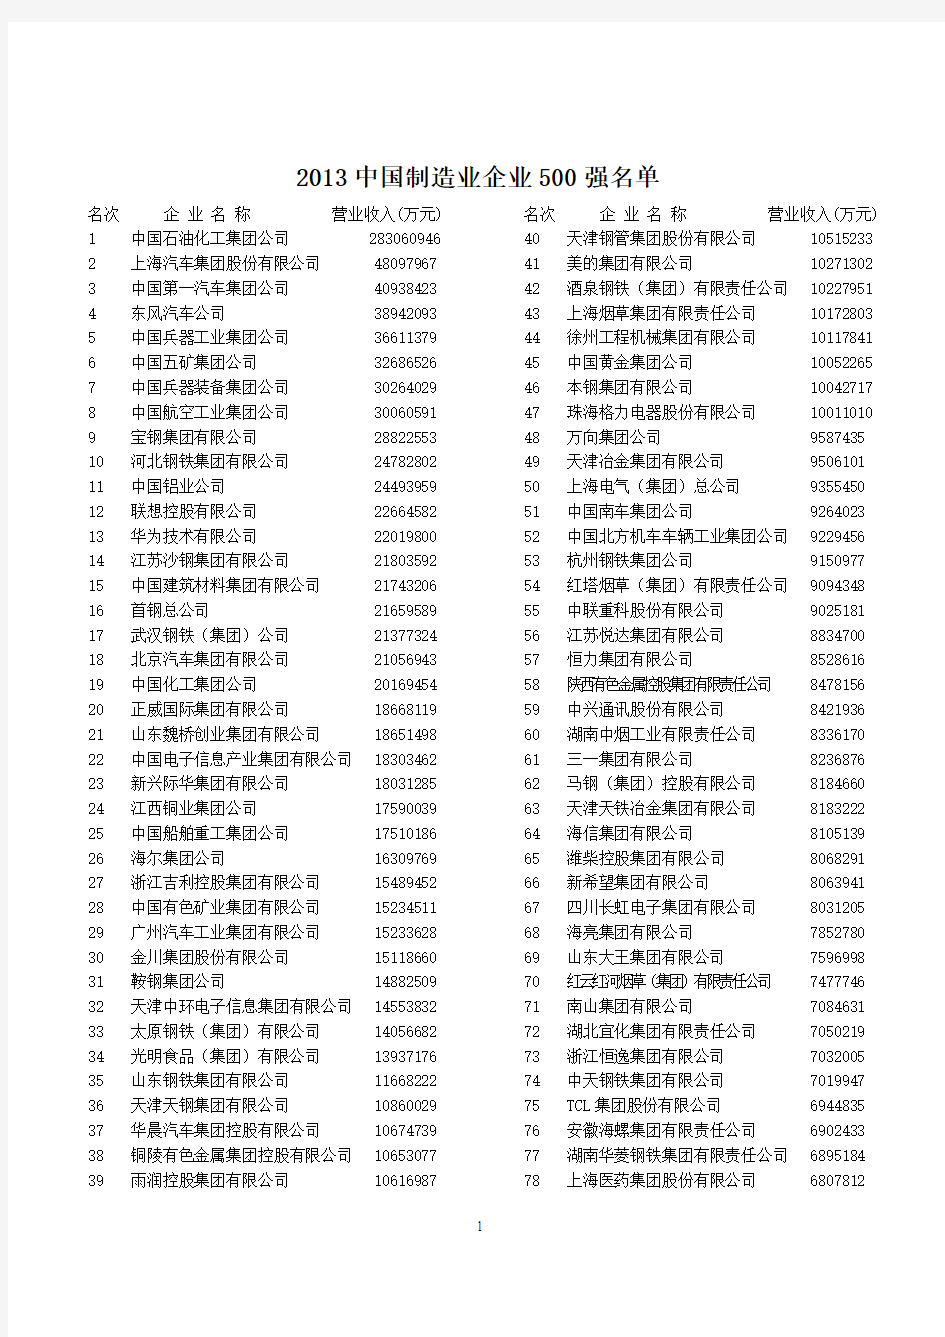 2013年中国制造业500强排行榜(完全名单)